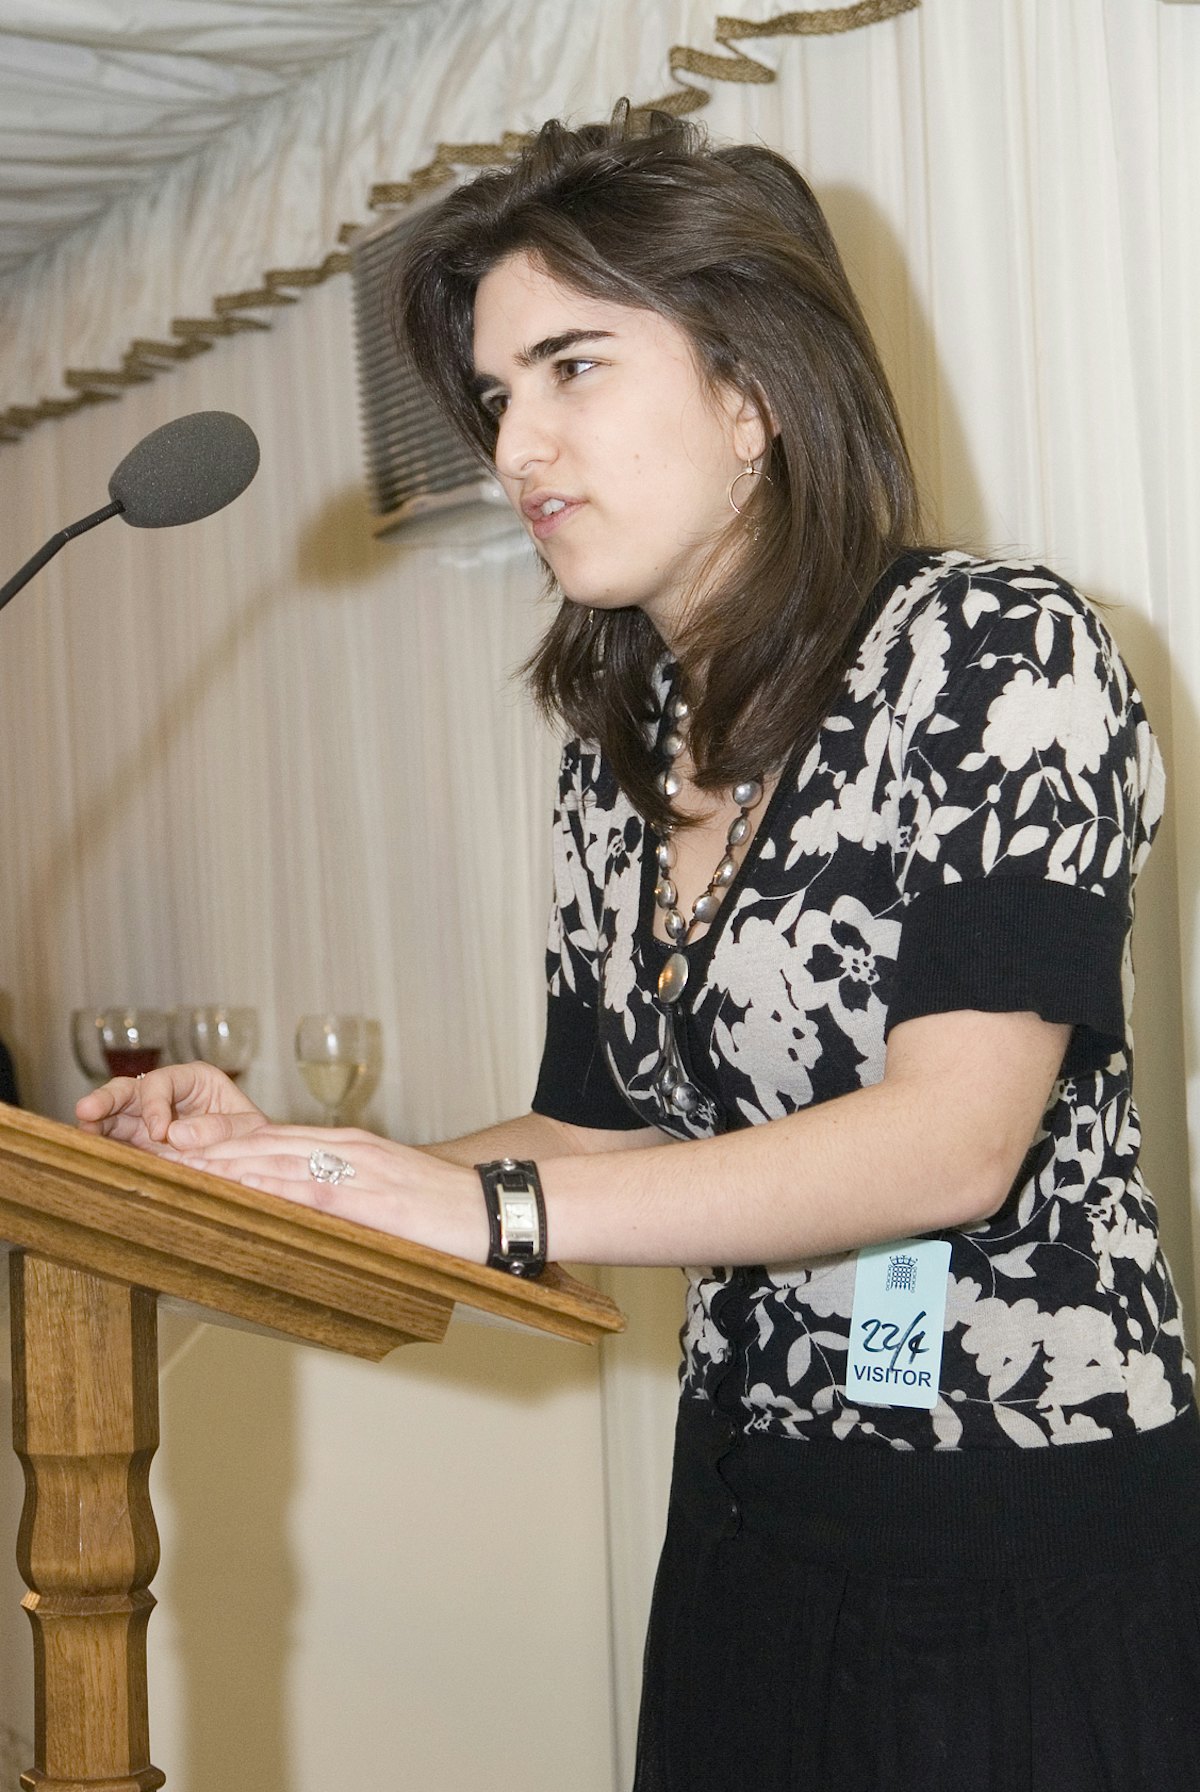 ژنا نیکُلاس، ۱۸ ساله، در مهمانی پارلمانی انگستان سخنرانی میکند. عکس از اندیشه اسلامبولی.